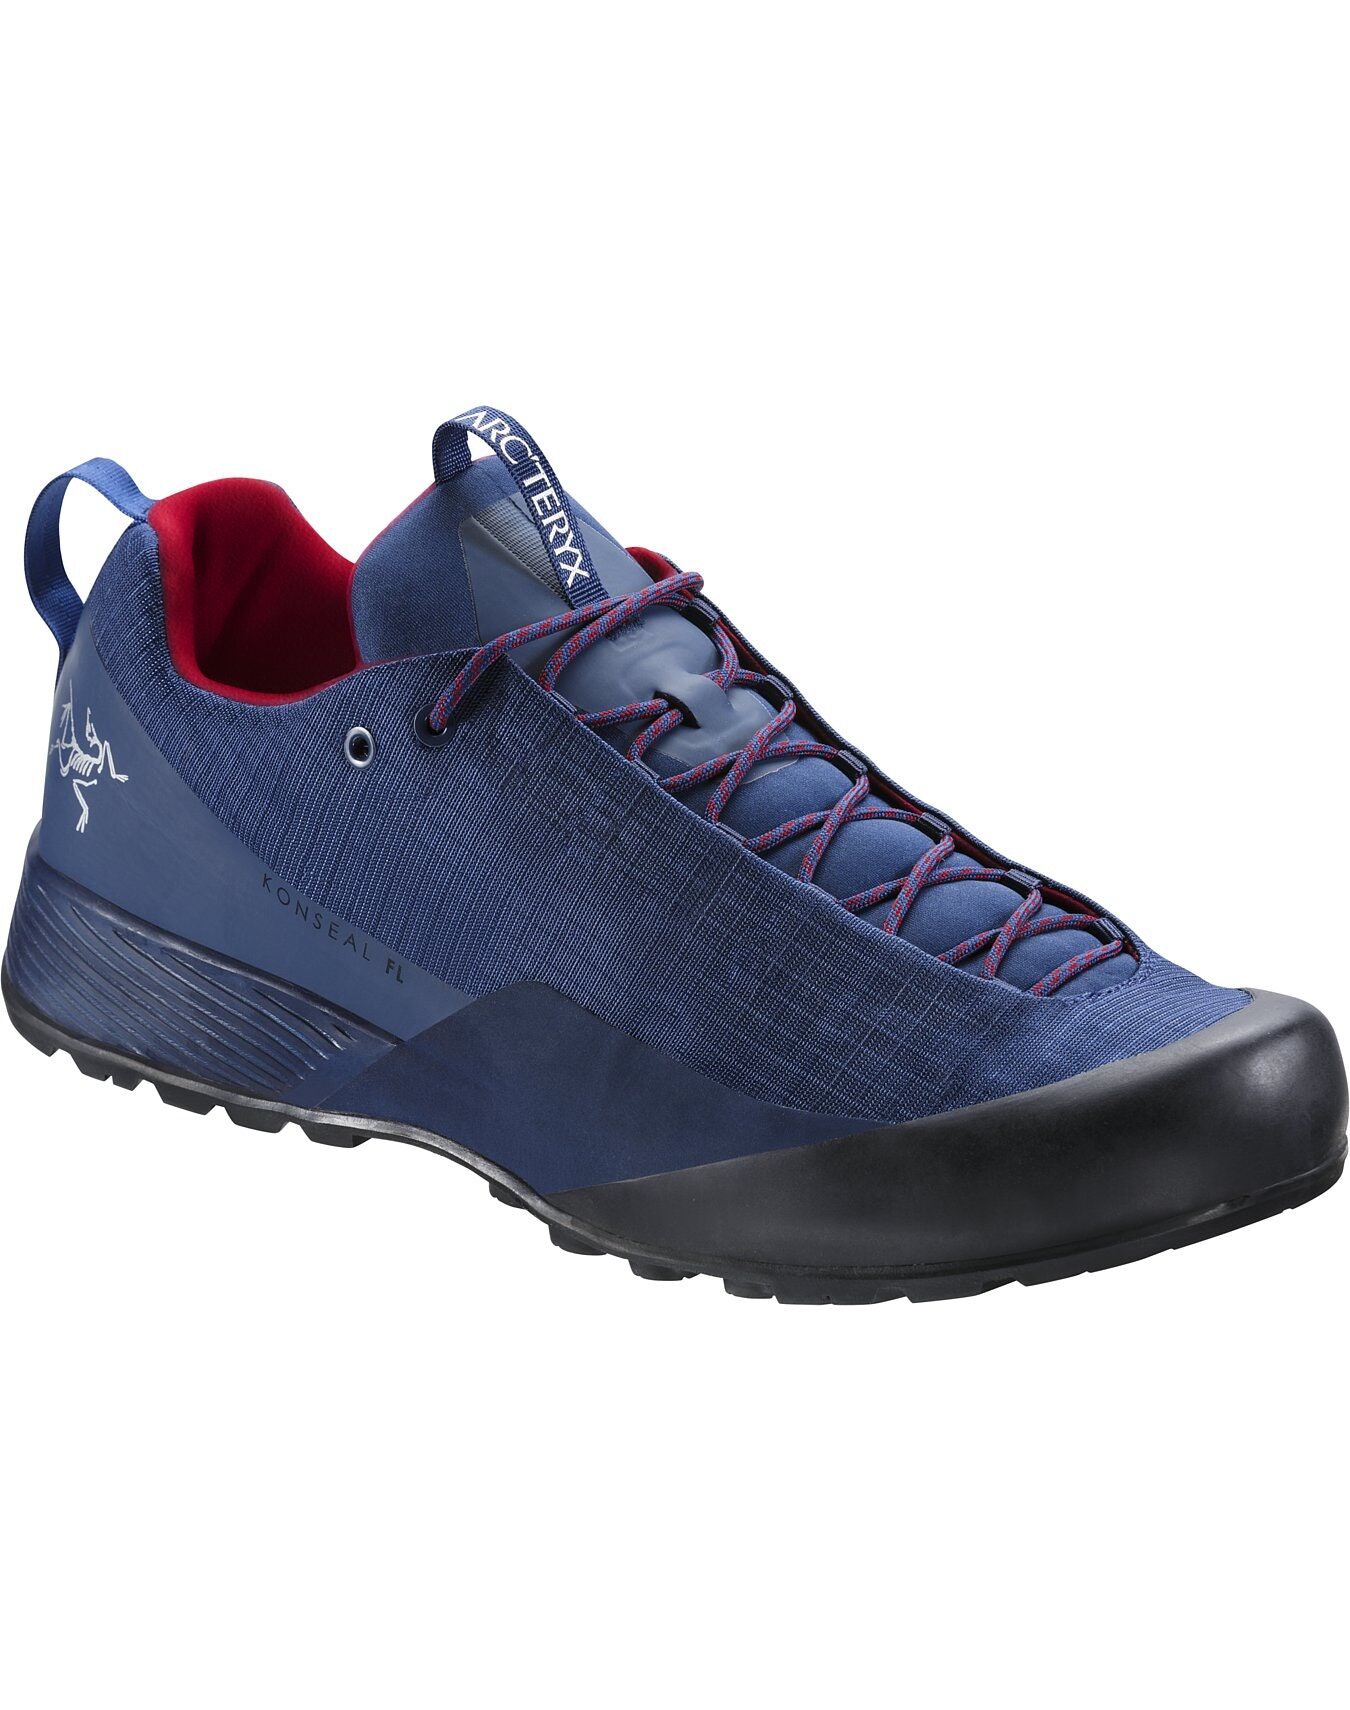 Arc'teryx Konseal FL - Approach shoes - Men's